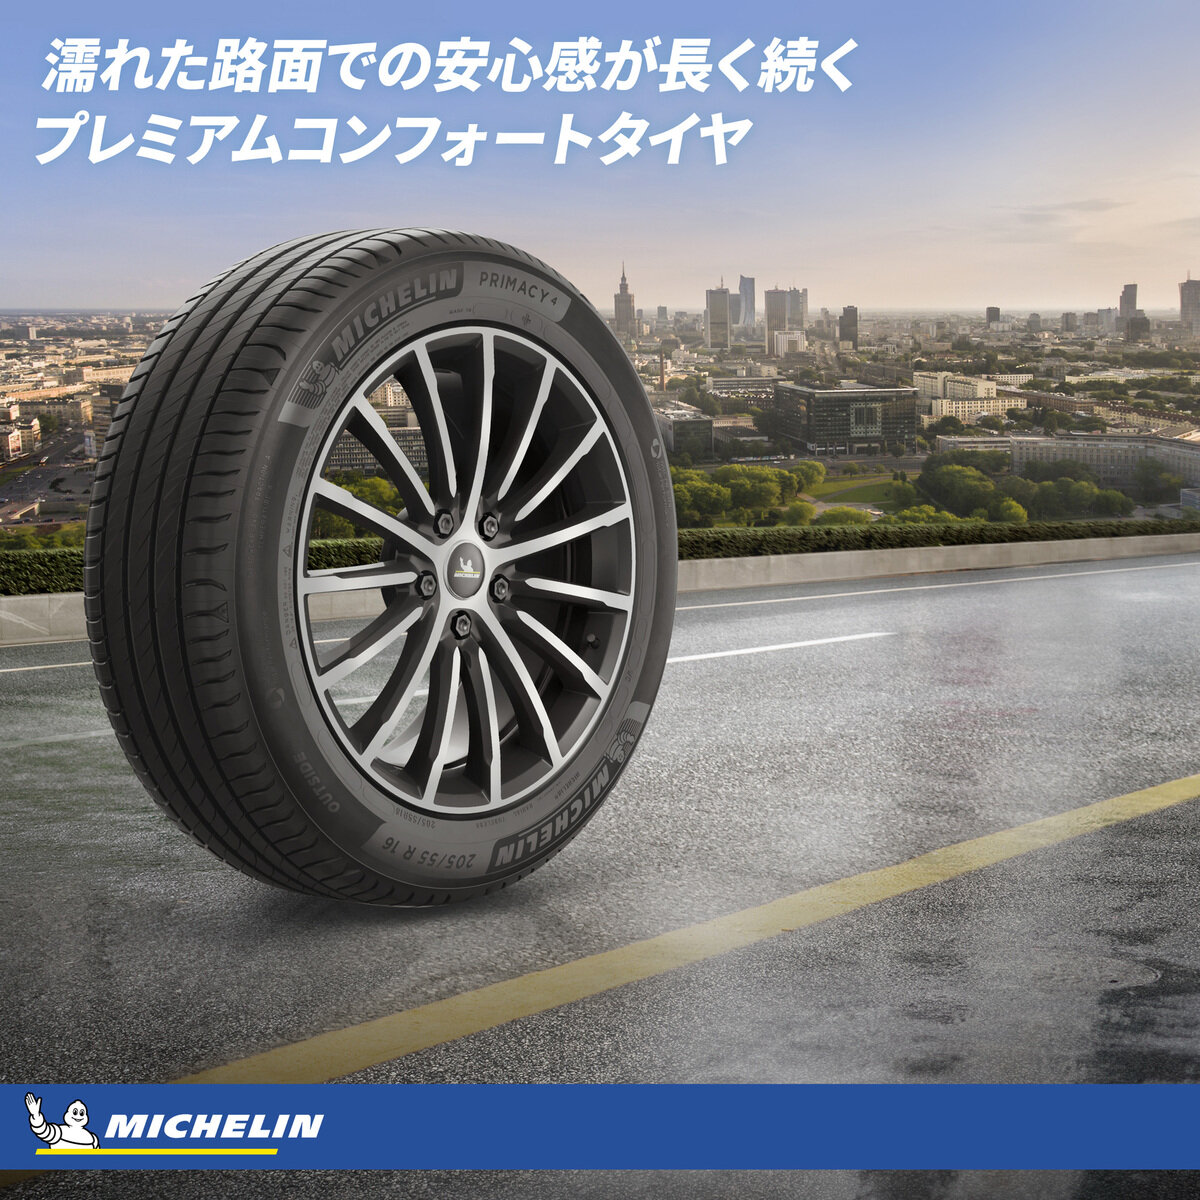 Michelin 225/50 R17 98Y XL TL PRIMACY 4+ MI Costco Japan